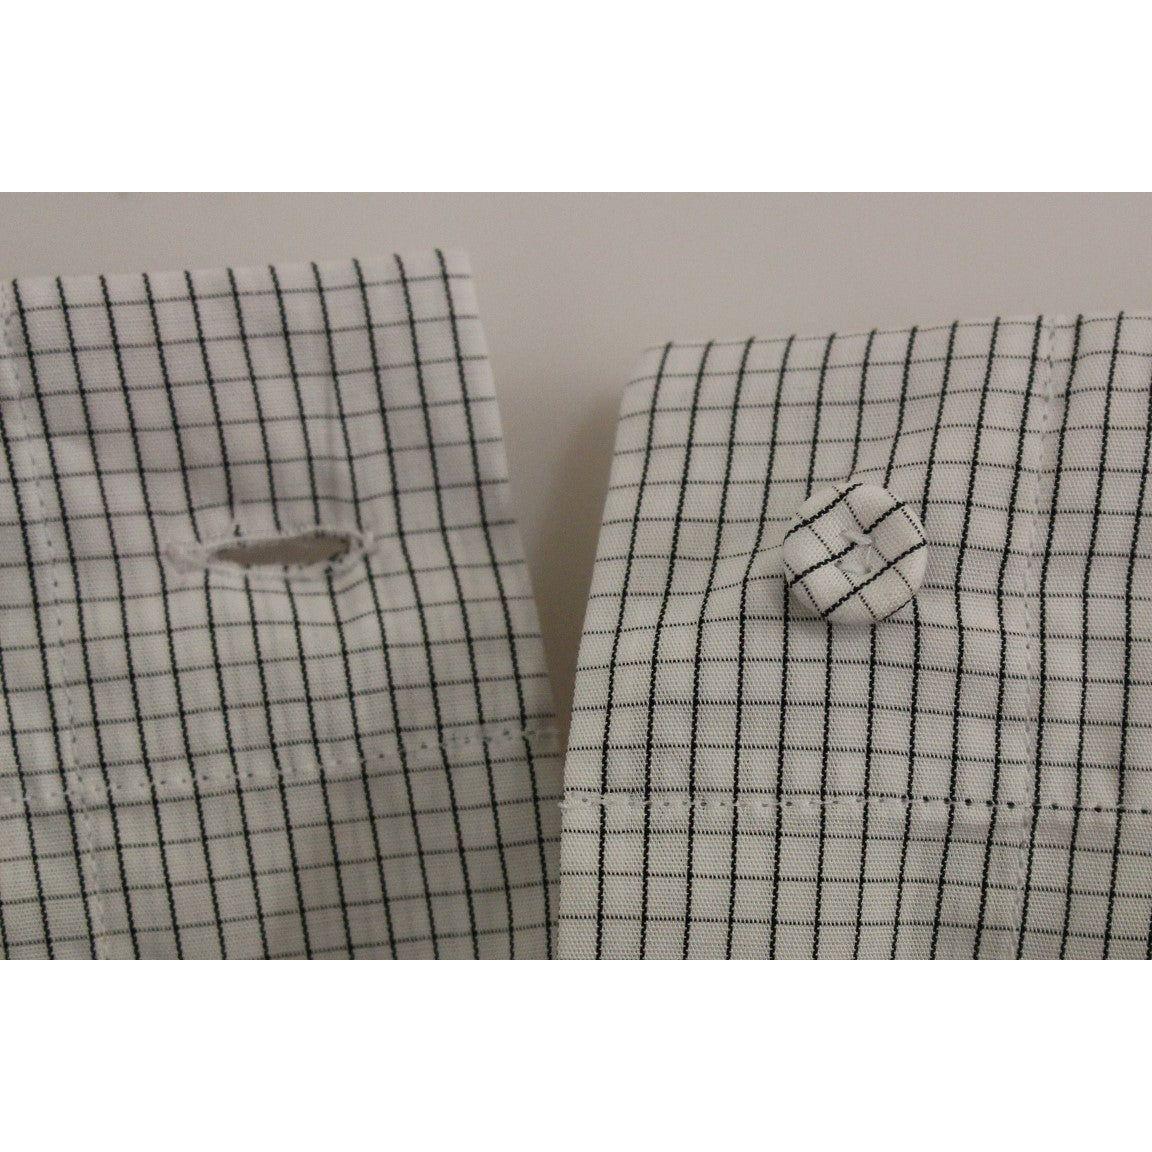 Andrea Incontri | White Checkered Stretch Cotton Shorts | McRichard Designer Brands